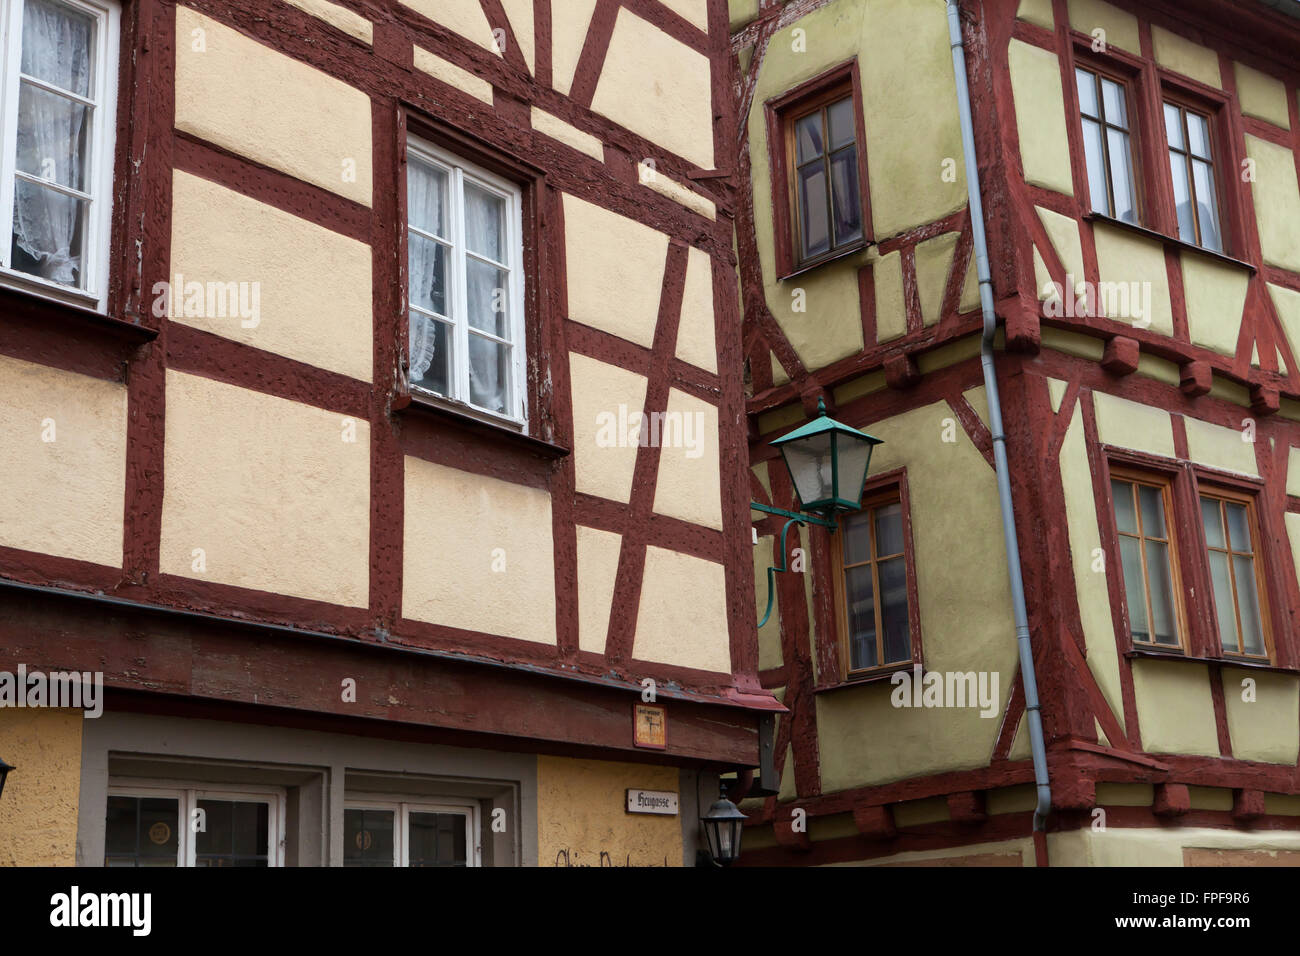 Traditionelle Fachwerk Häuser in Rothenburg Ob der Tauber, Franken, Bayern, Mitteldeutschlands. Stockfoto